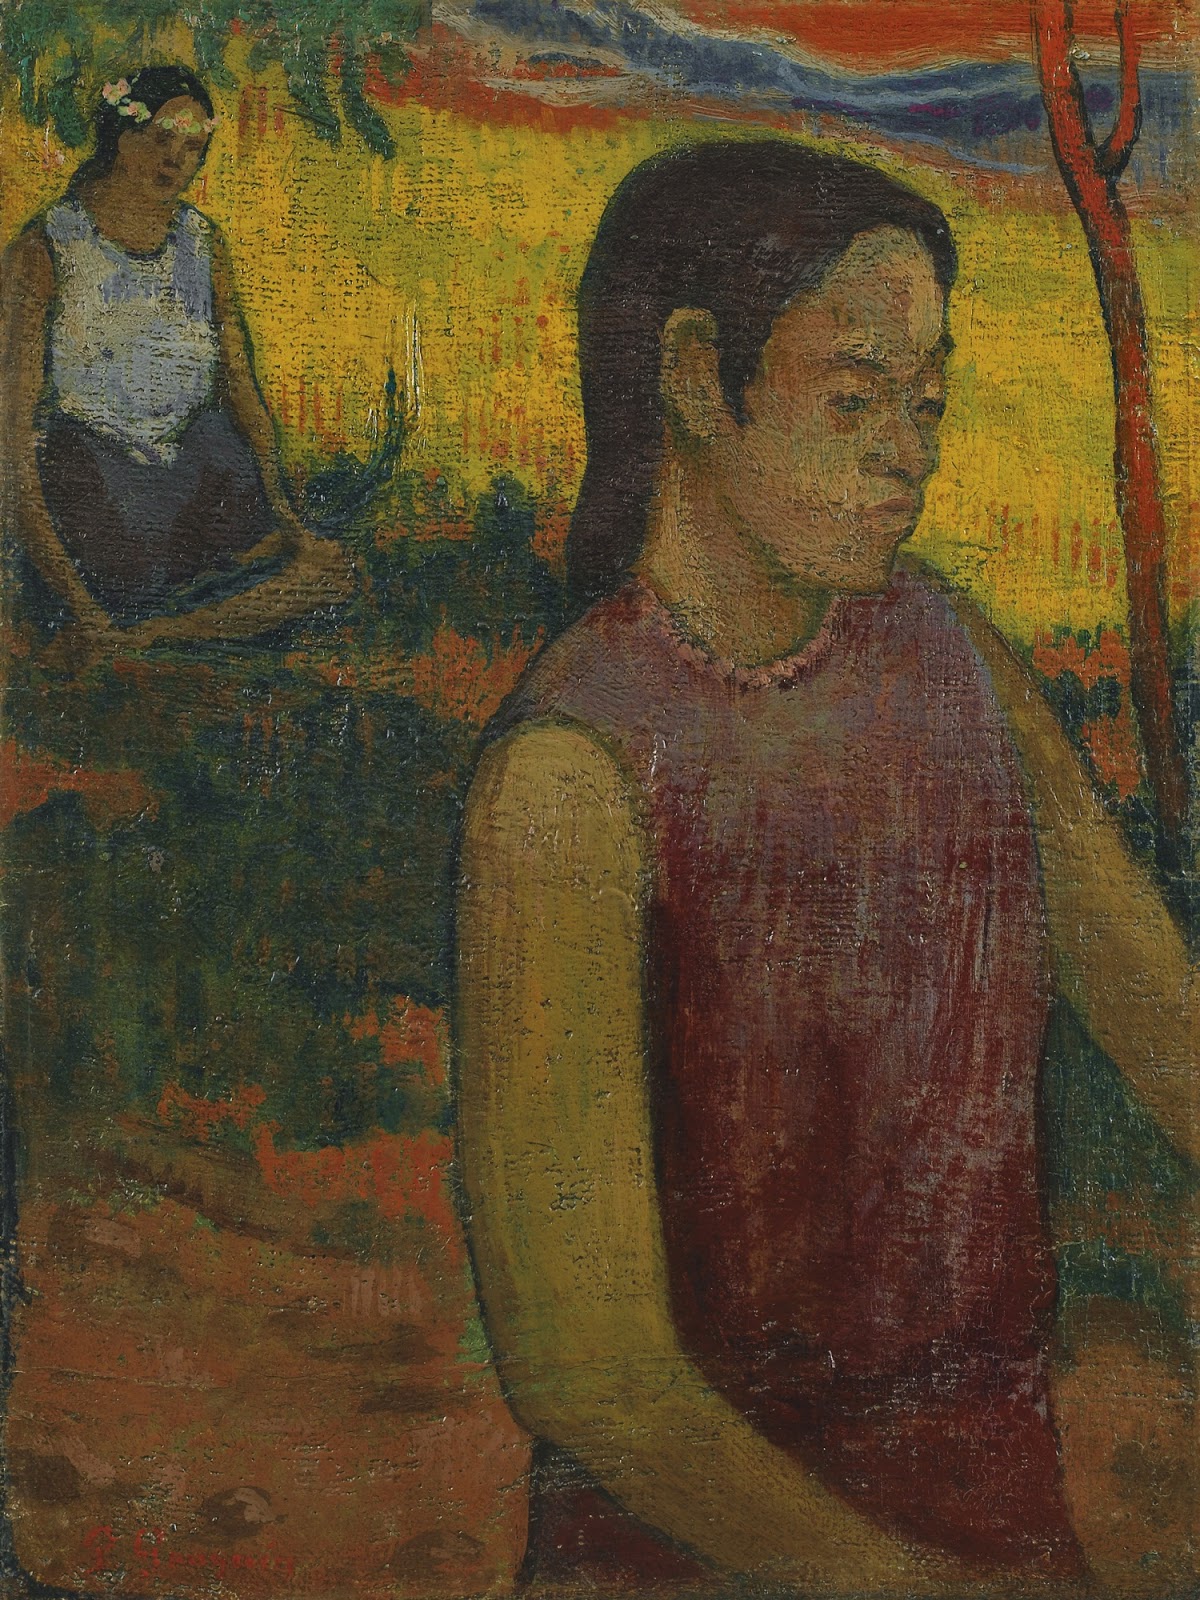 Paul+Gauguin-1848-1903 (381).jpg